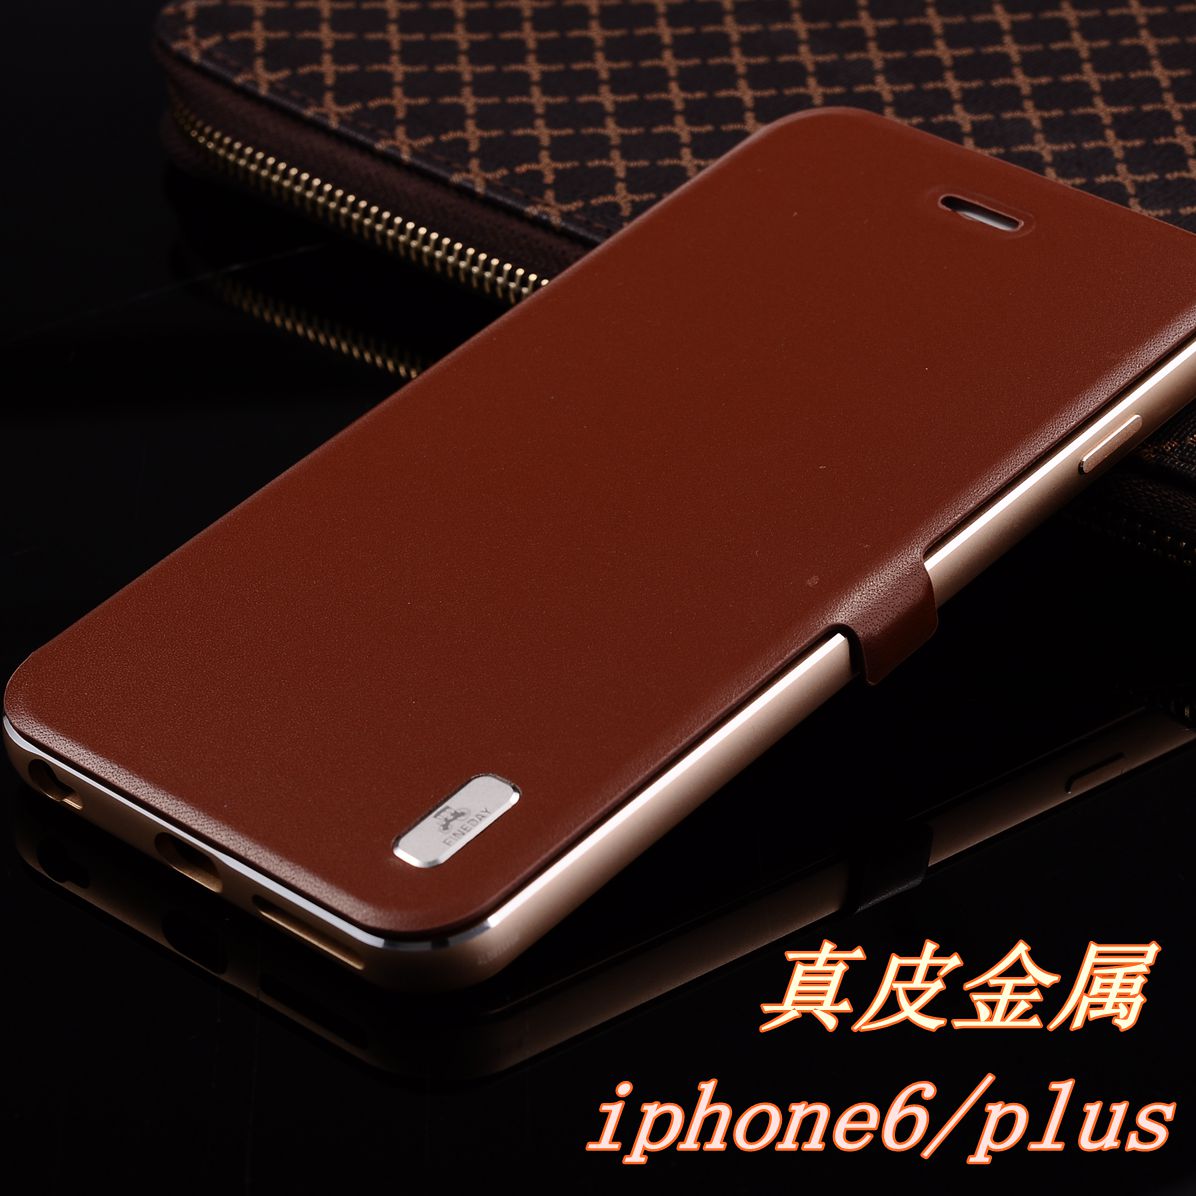 高端奢华 iphone6手机壳真皮 苹果6 plus手机套 金属边框翻盖皮套